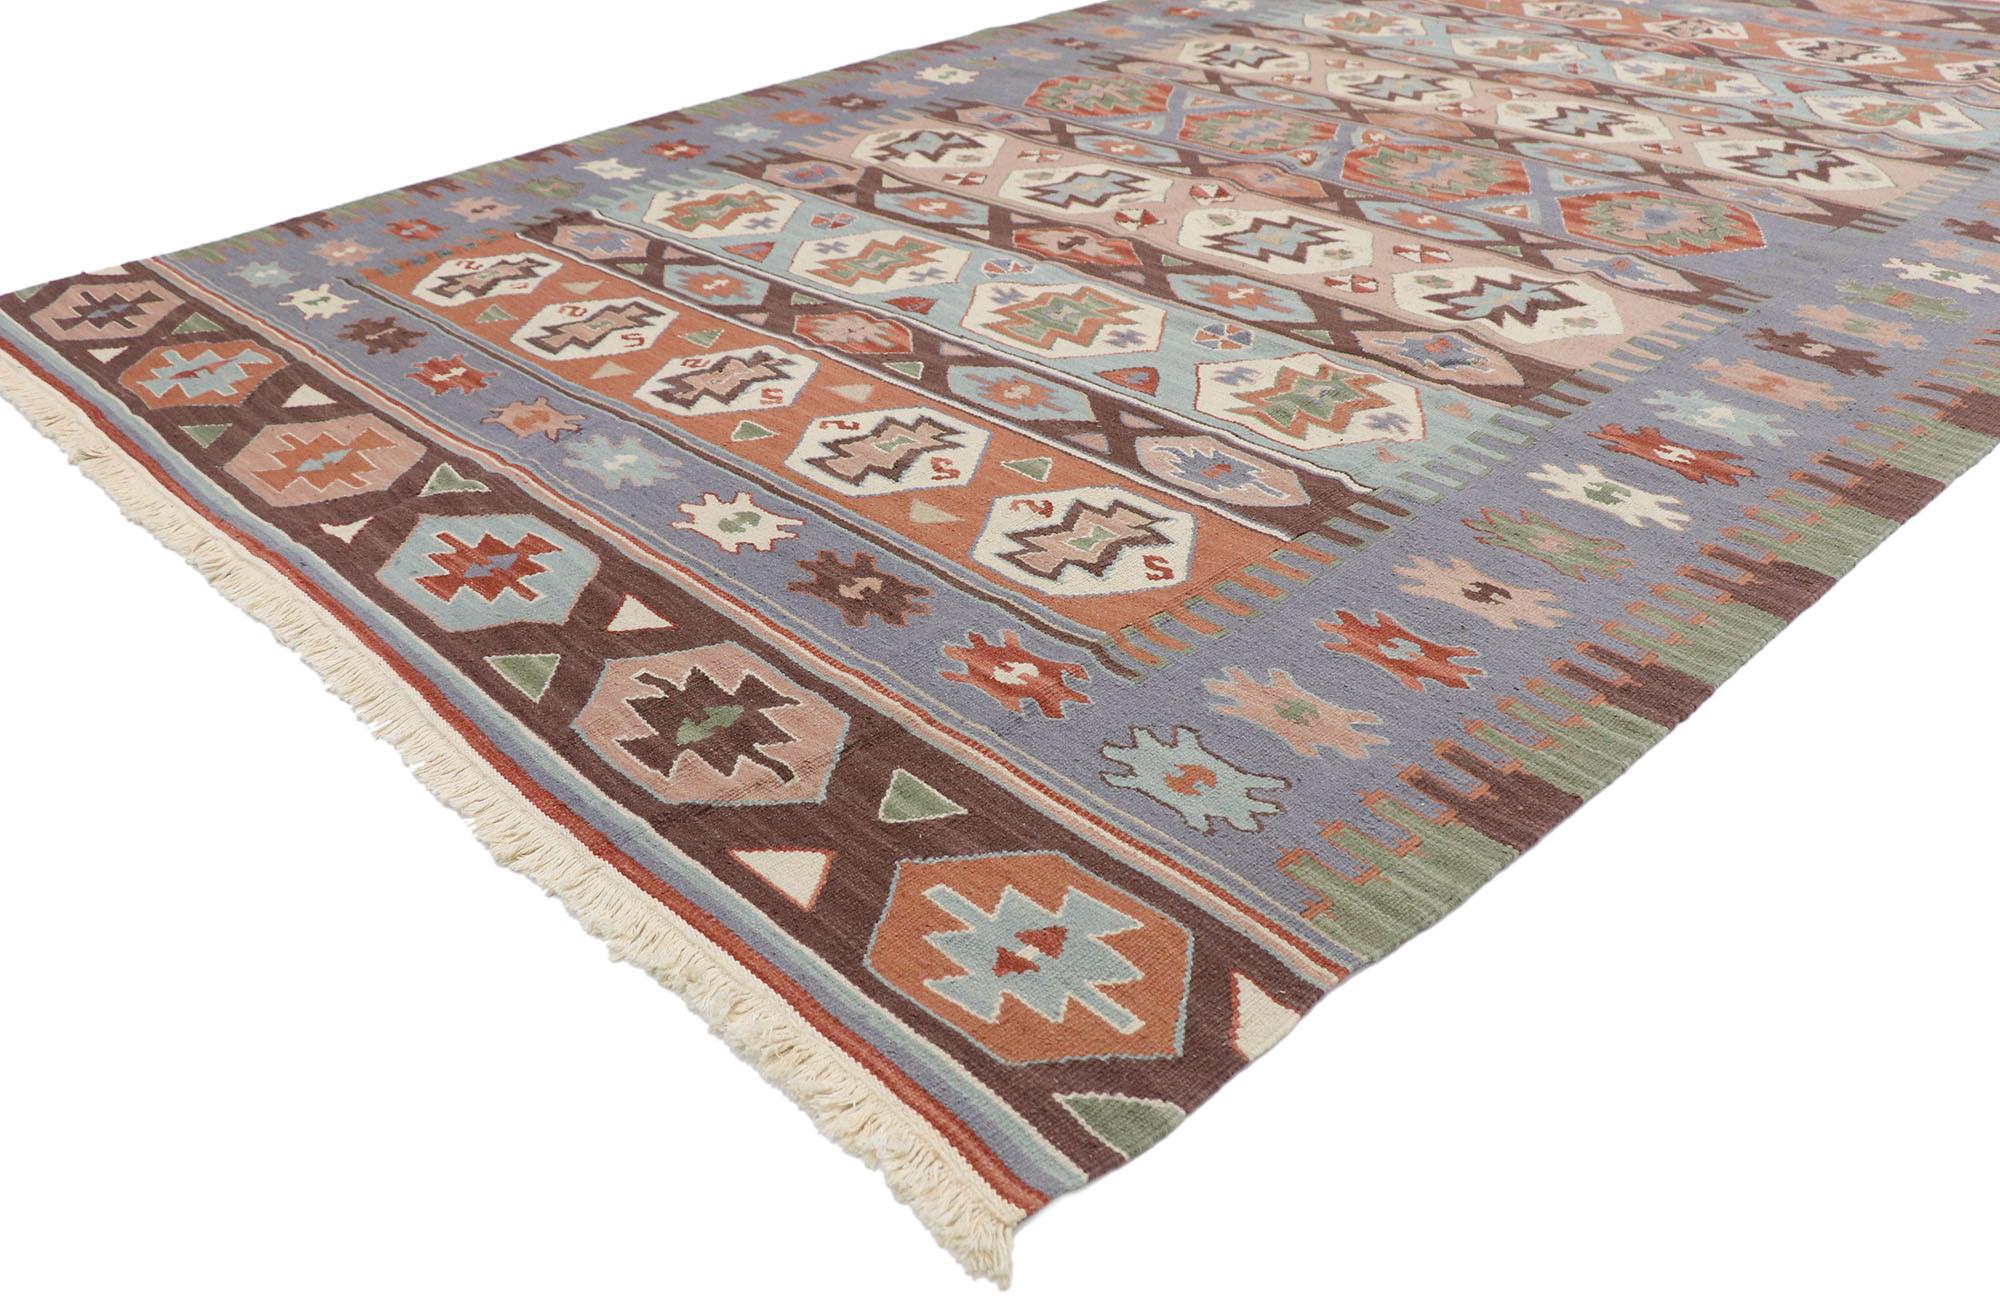 78054 Vintage Persian Shiraz Kilim Teppich mit Boho Chic Tribal Style 05'07 x 08'08. Voller winziger Details und einem kühnen, ausdrucksstarken Design, kombiniert mit kontrastreichen Farben und einem Stammesstil, ist dieser handgewebte, alte